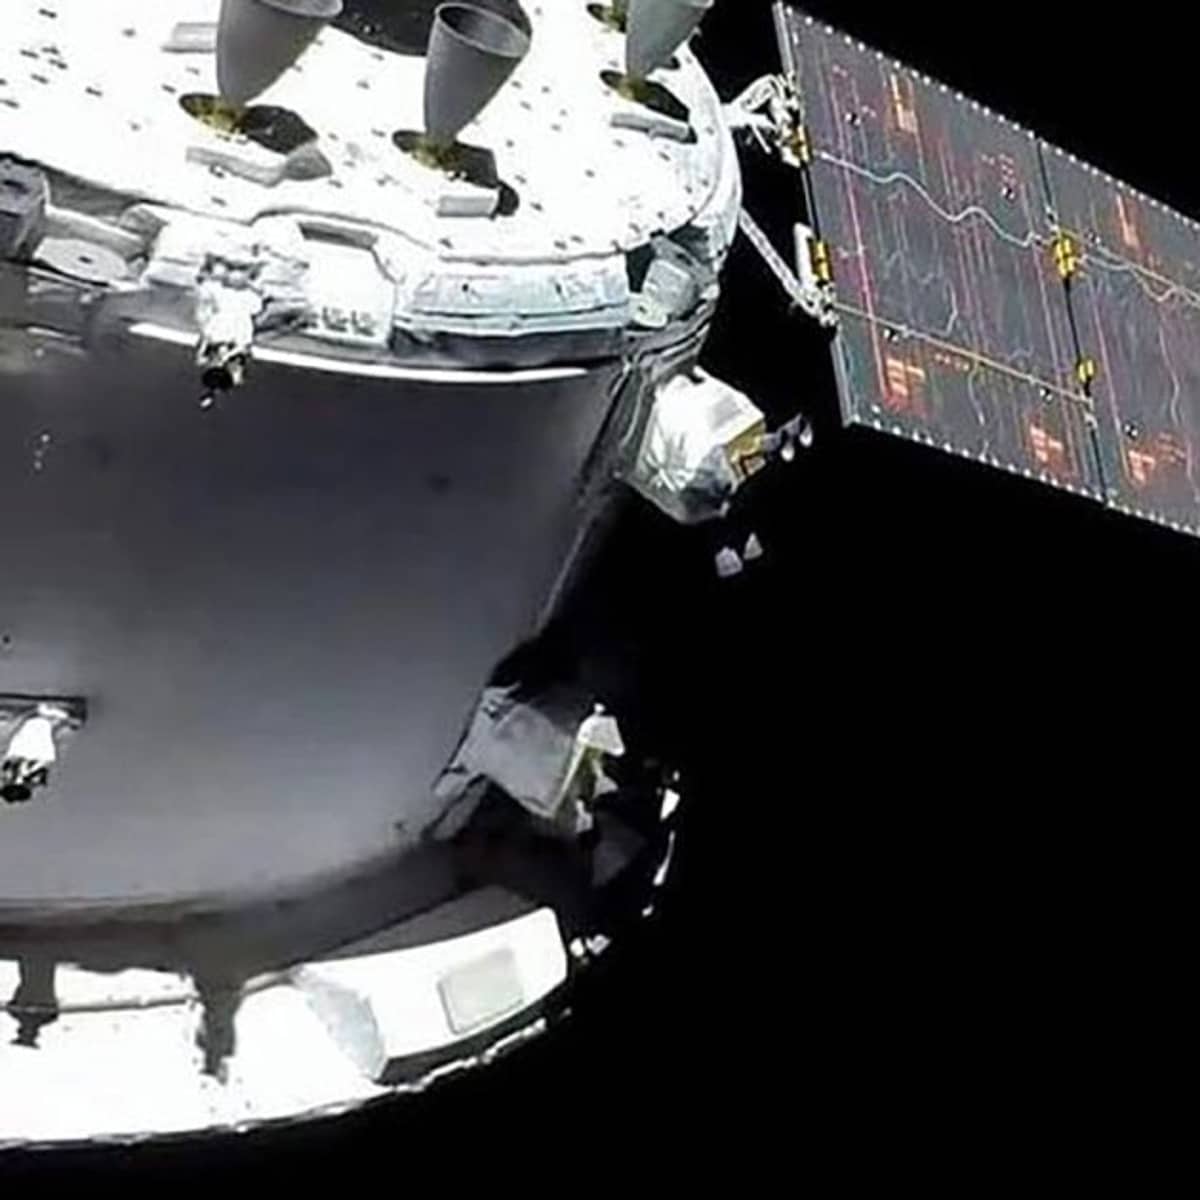 Continúan los problemas para la misión Artemis I: la nave Orion registra 13 «anomalías» durante su viaje a la Luna